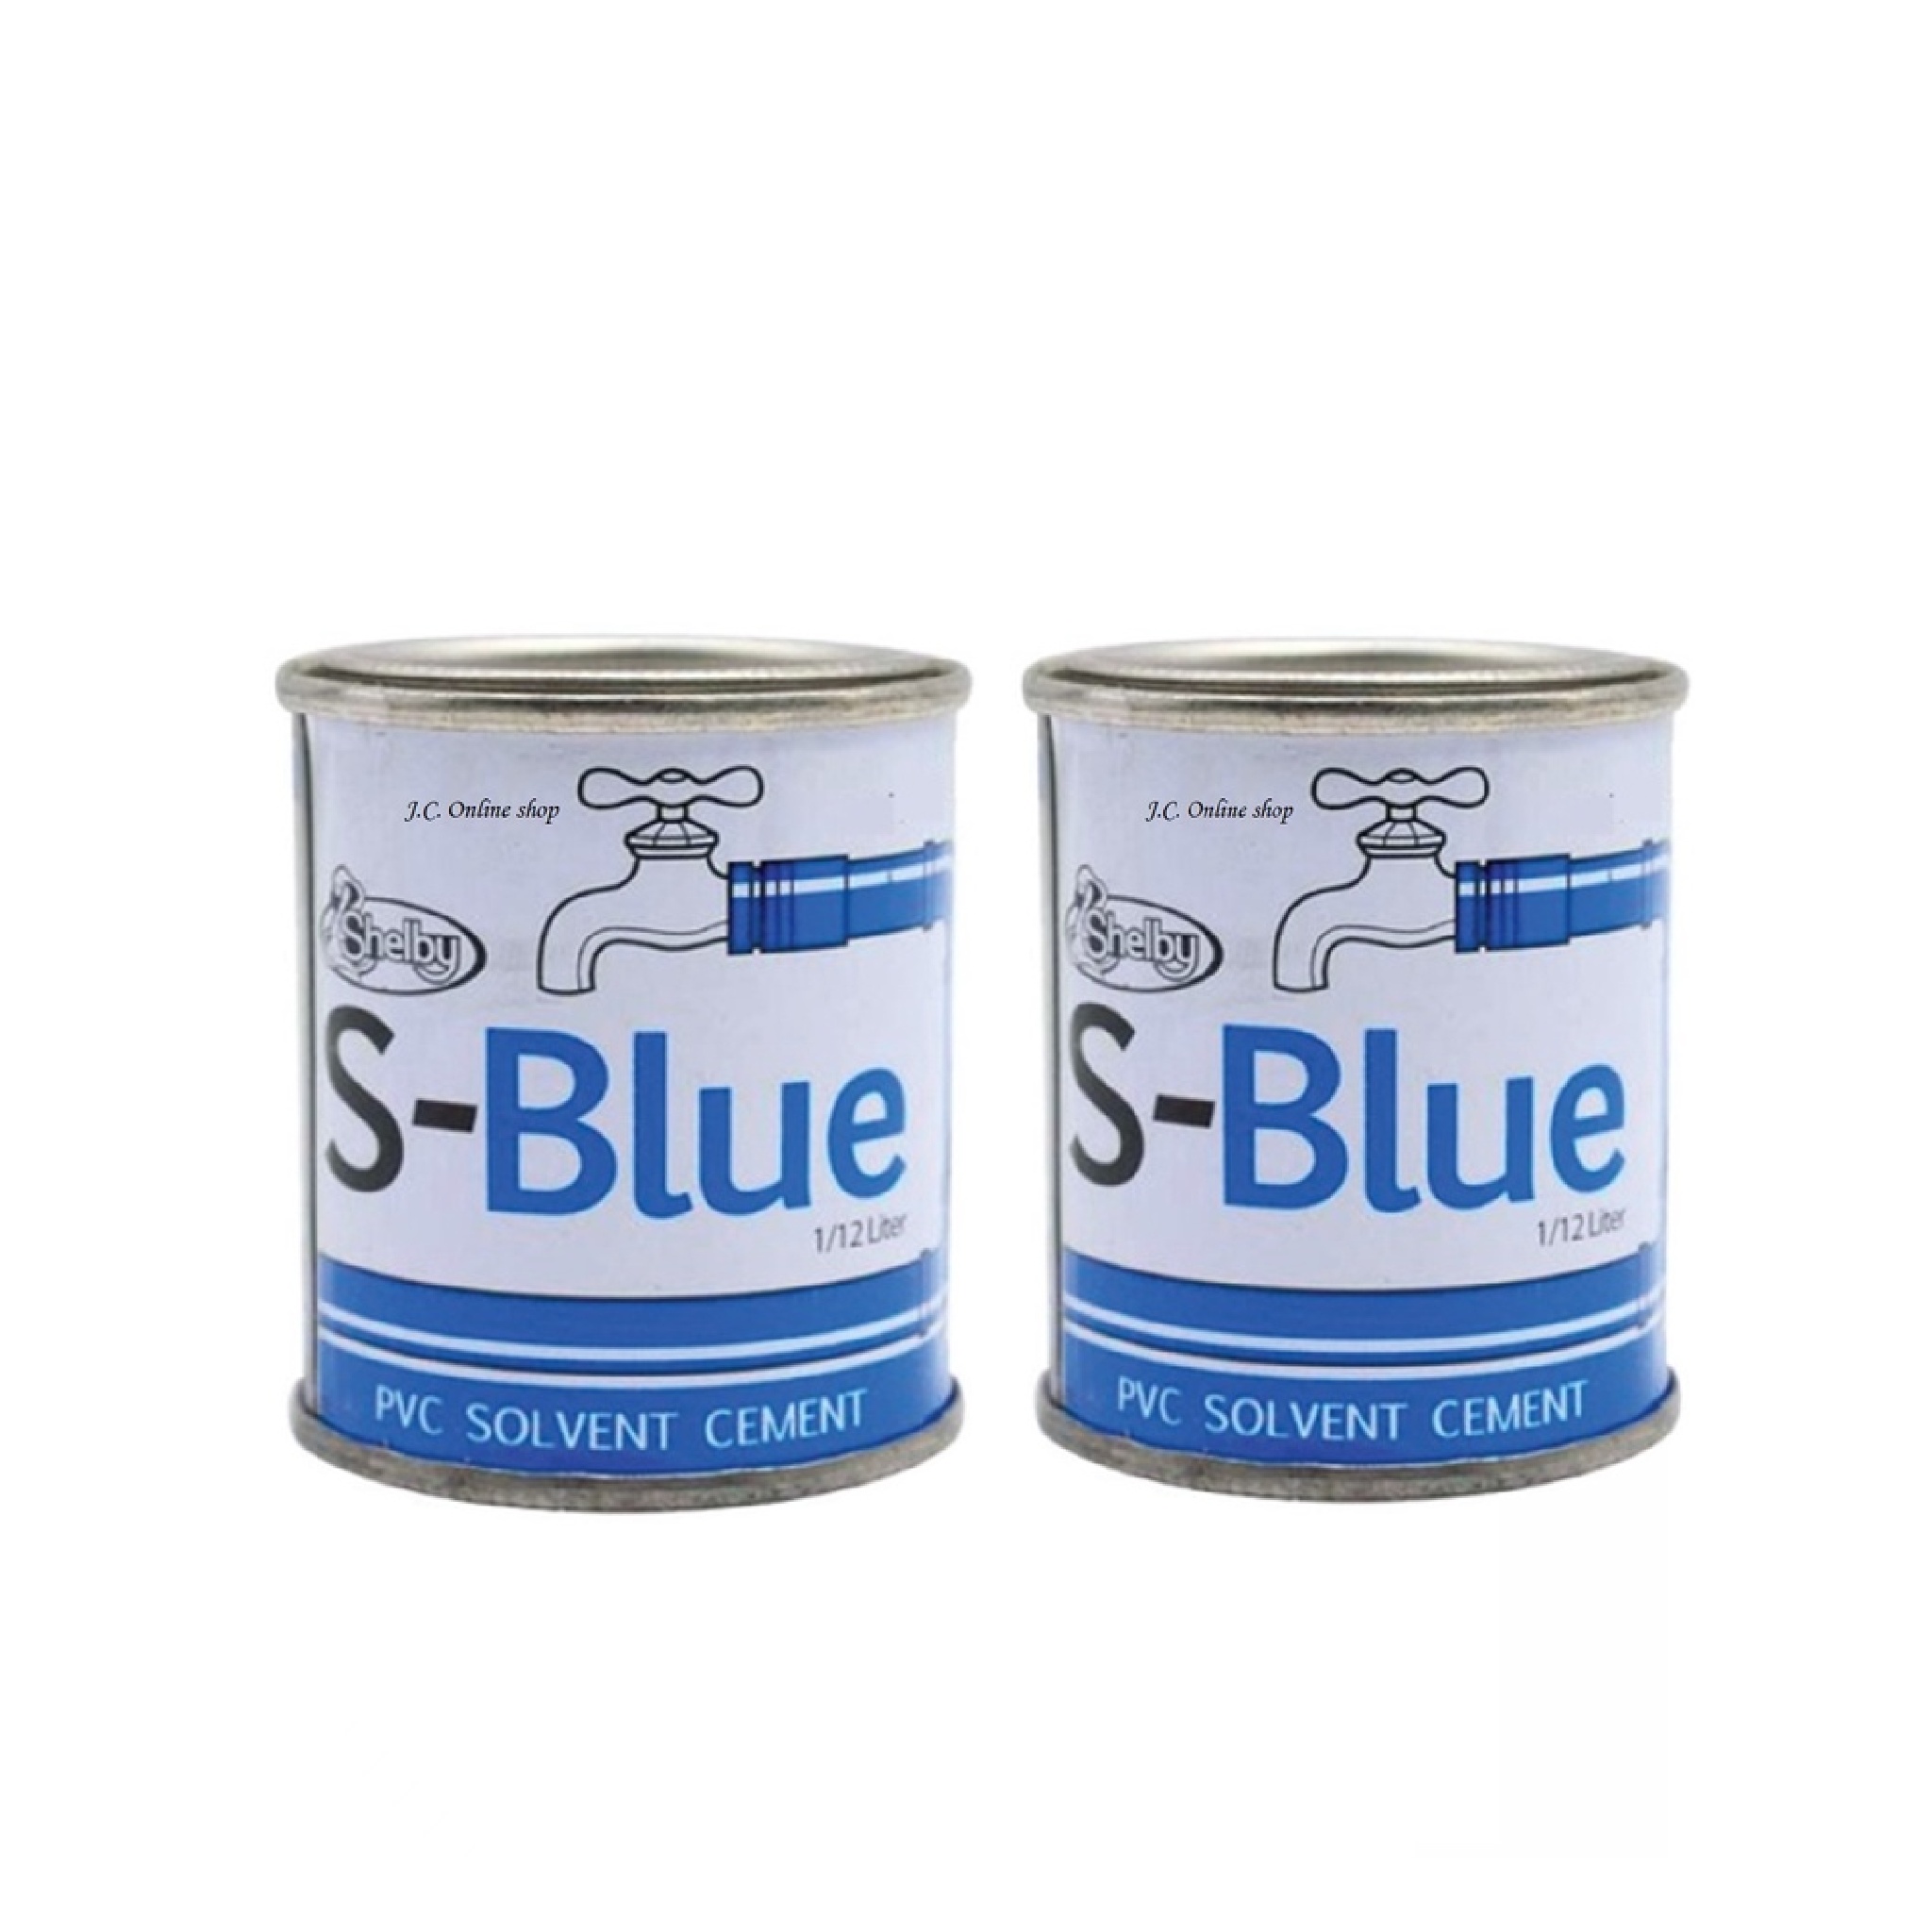 SHELBY Blue S-17 Pvc Solvent Cement 1/12L